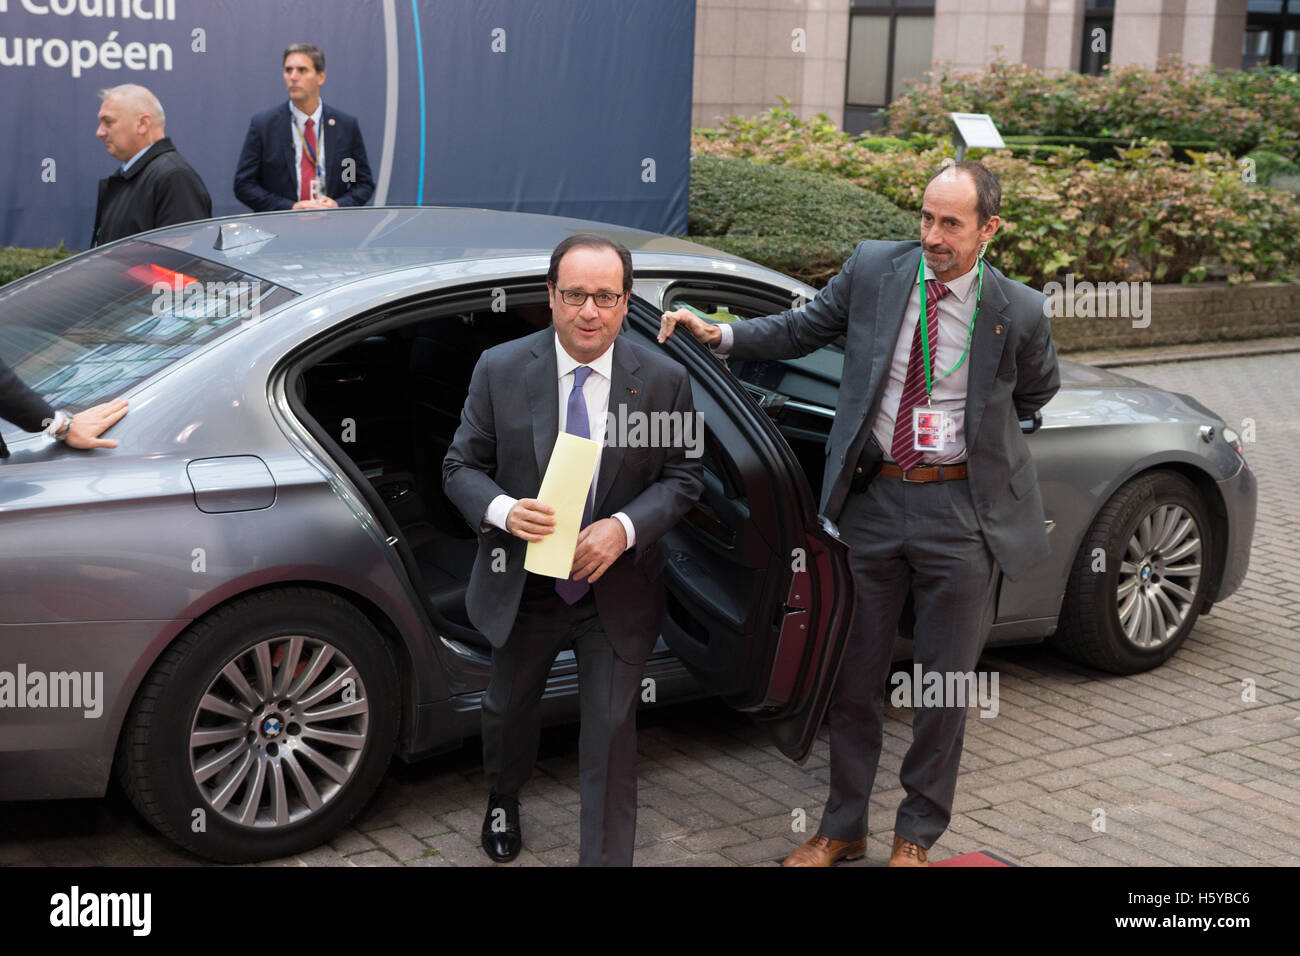 Bruxelles, Belgio. 20 ottobre, 2016. Il Presidente francese esce dalla sua auto per entrare nel Consiglio europeo di Bruxelles (Belgio). Credito: Paul-Marie Guyon/Alamy Live News Foto Stock